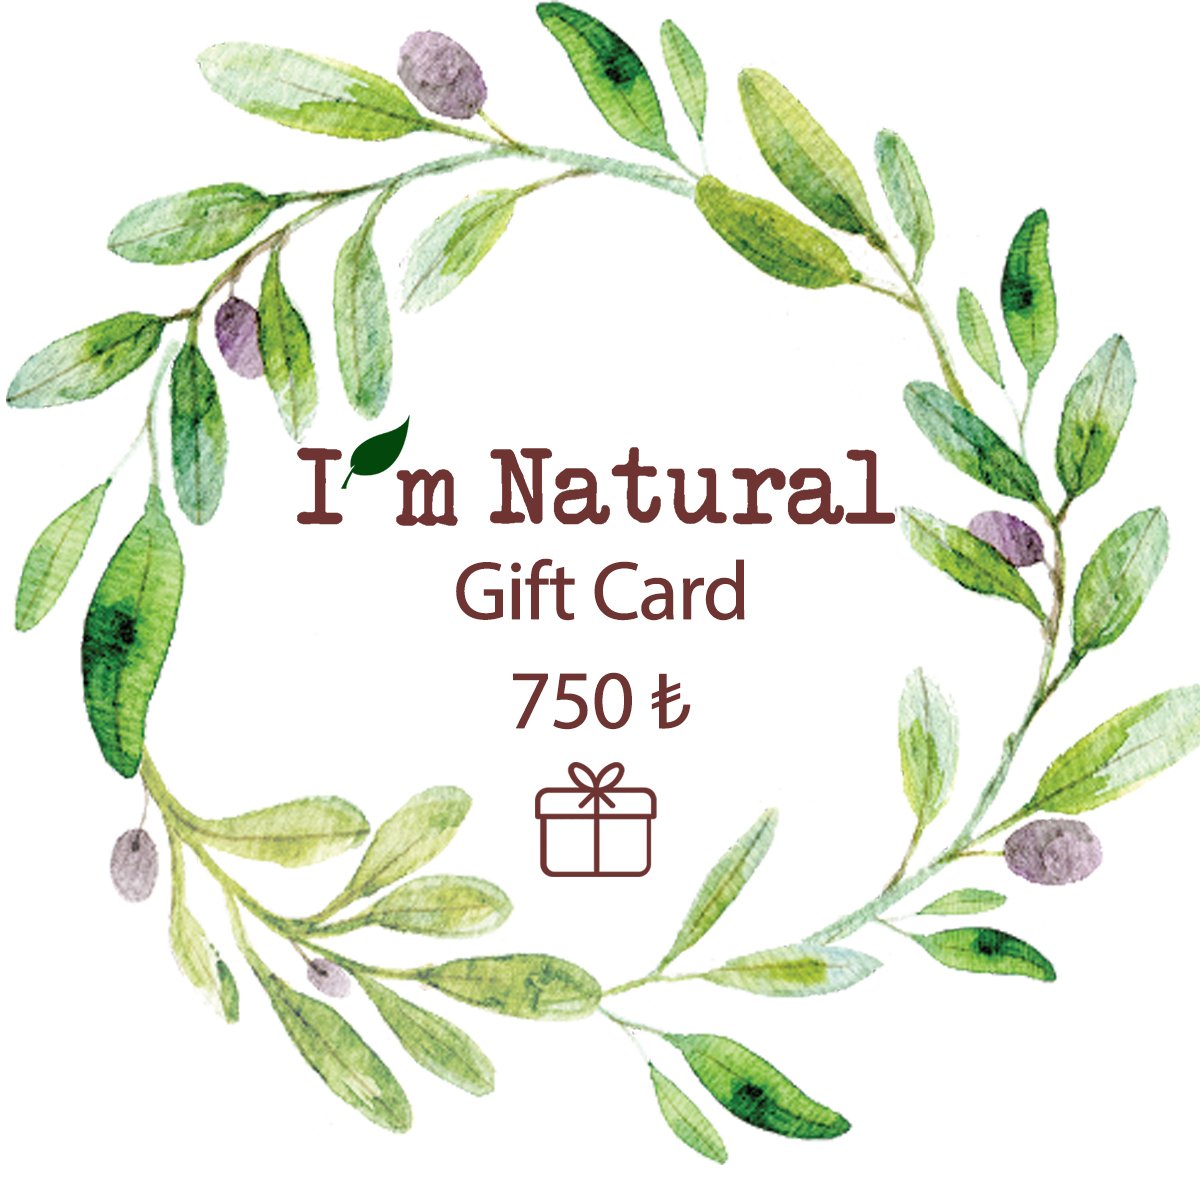 NATURAL GIFT CARD 750 TL